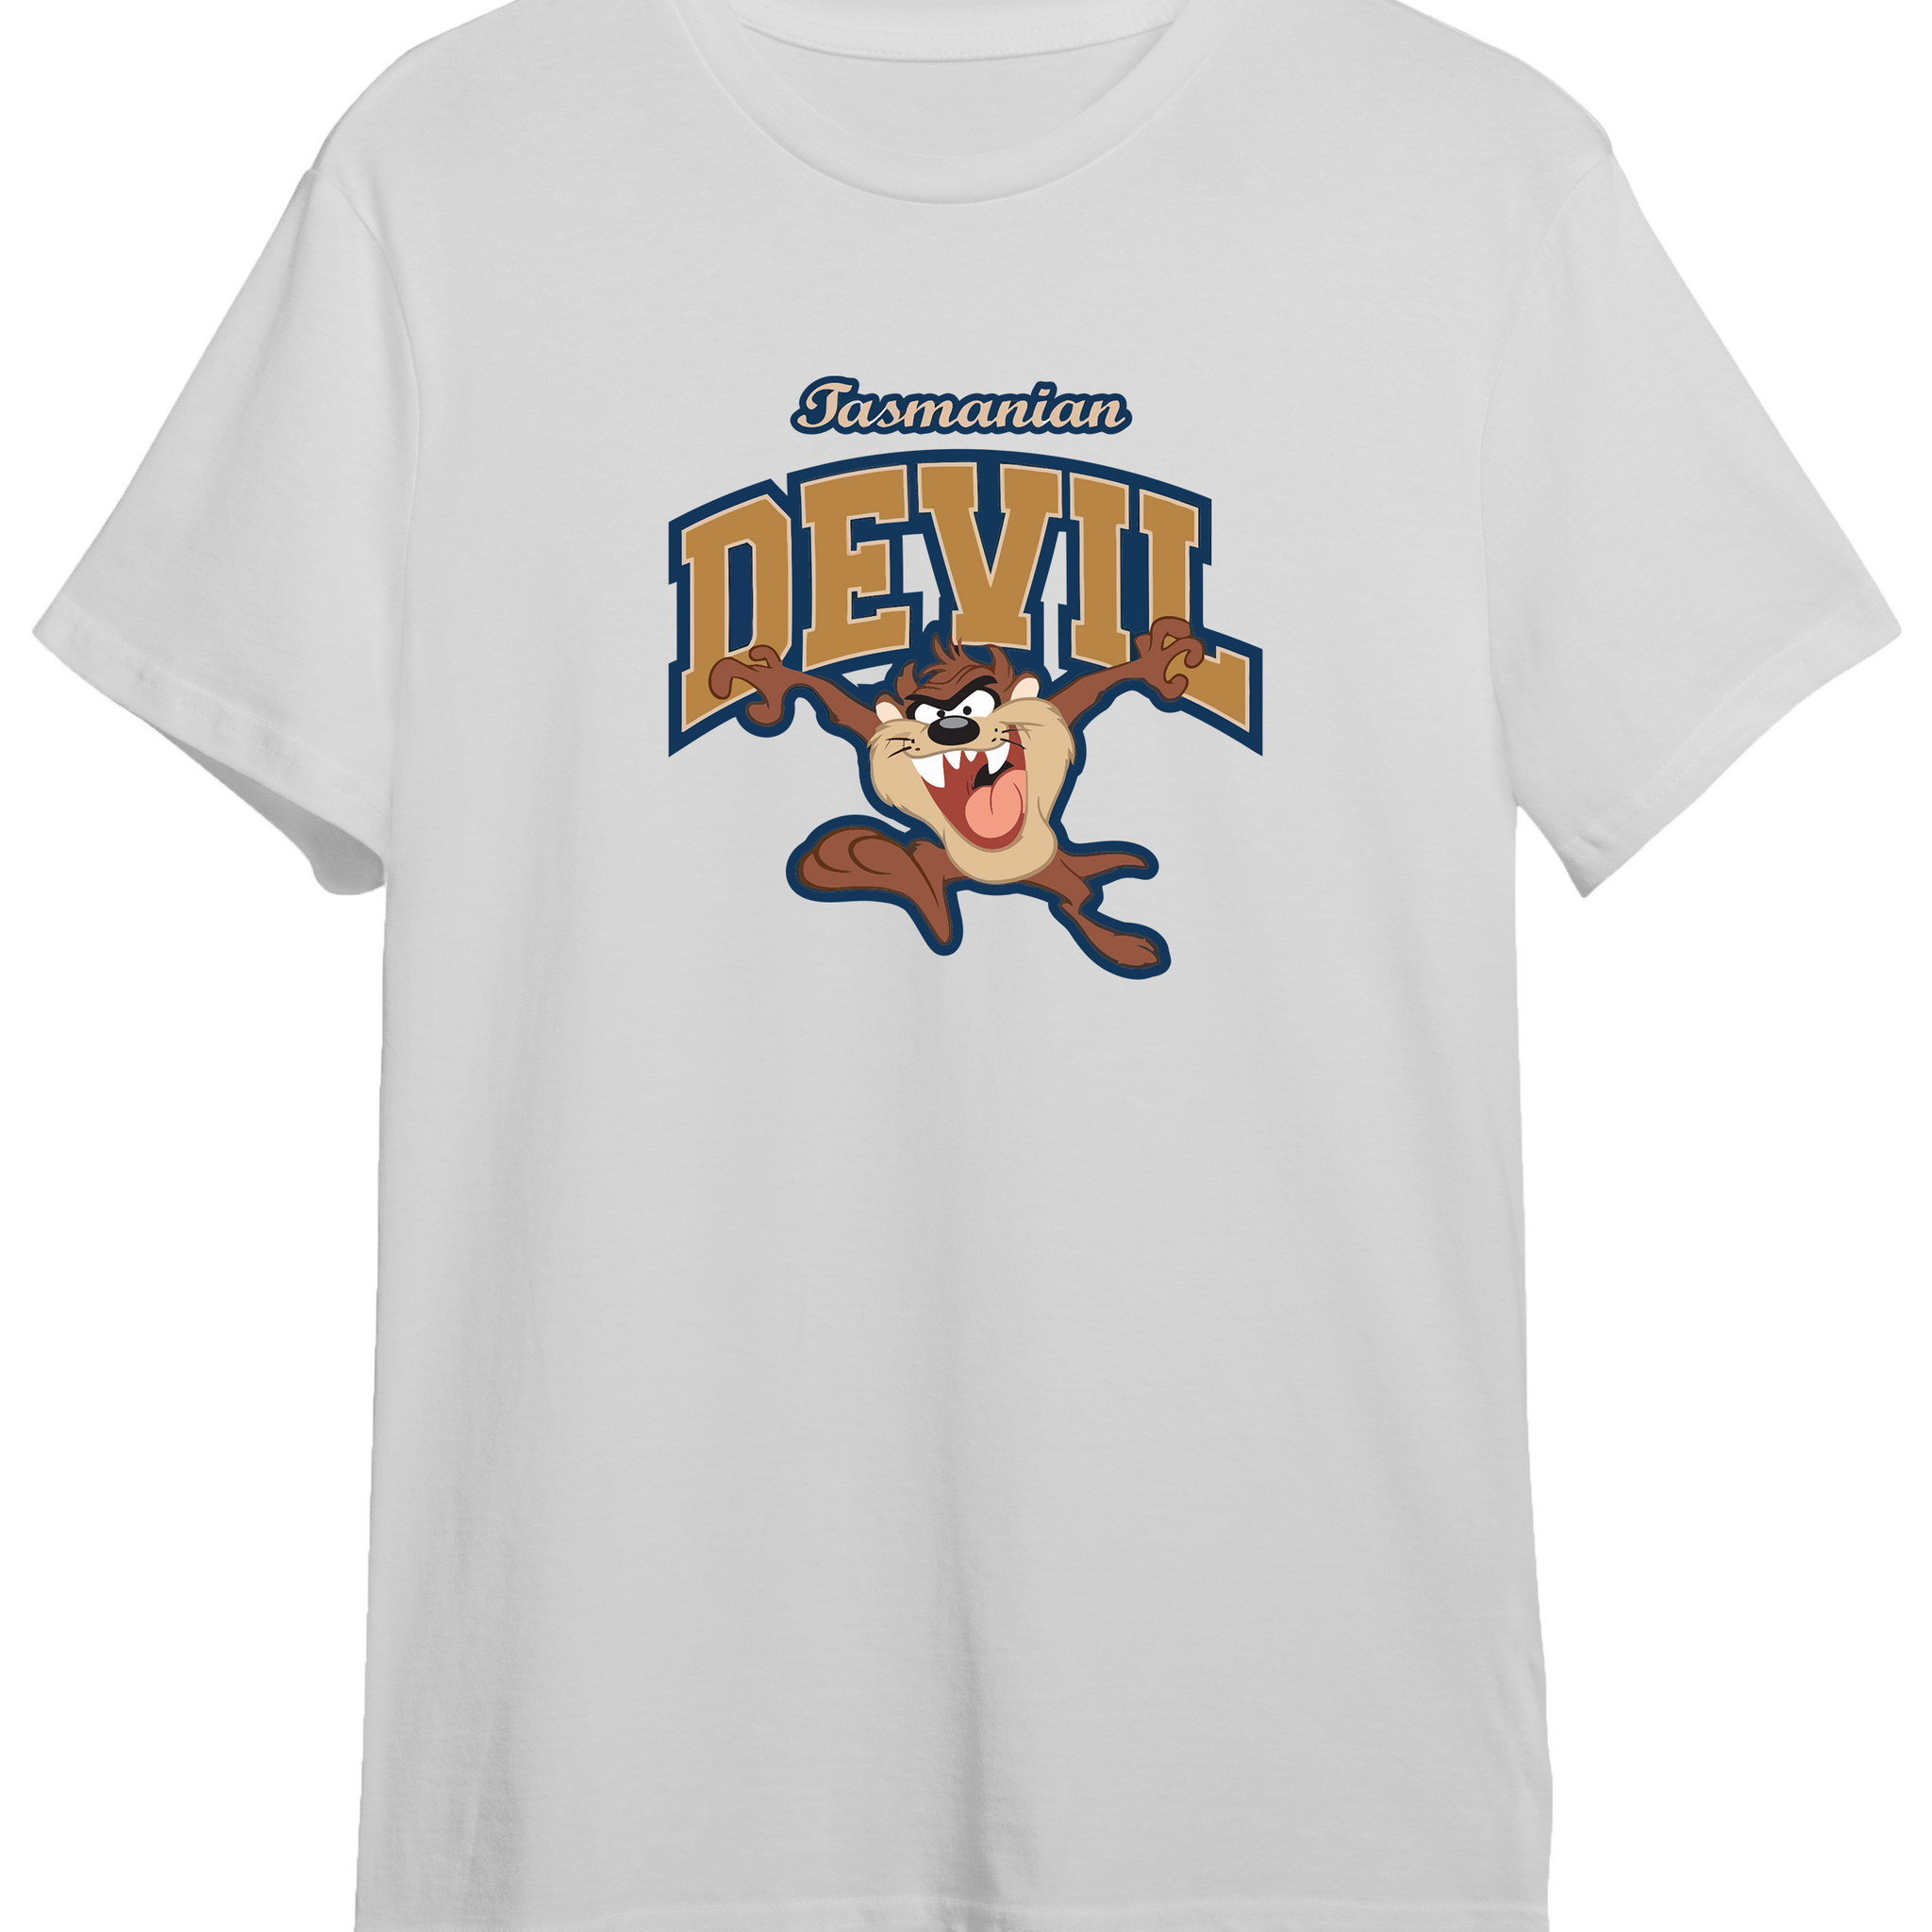 Tasmanian Devil - Regular Tshirt